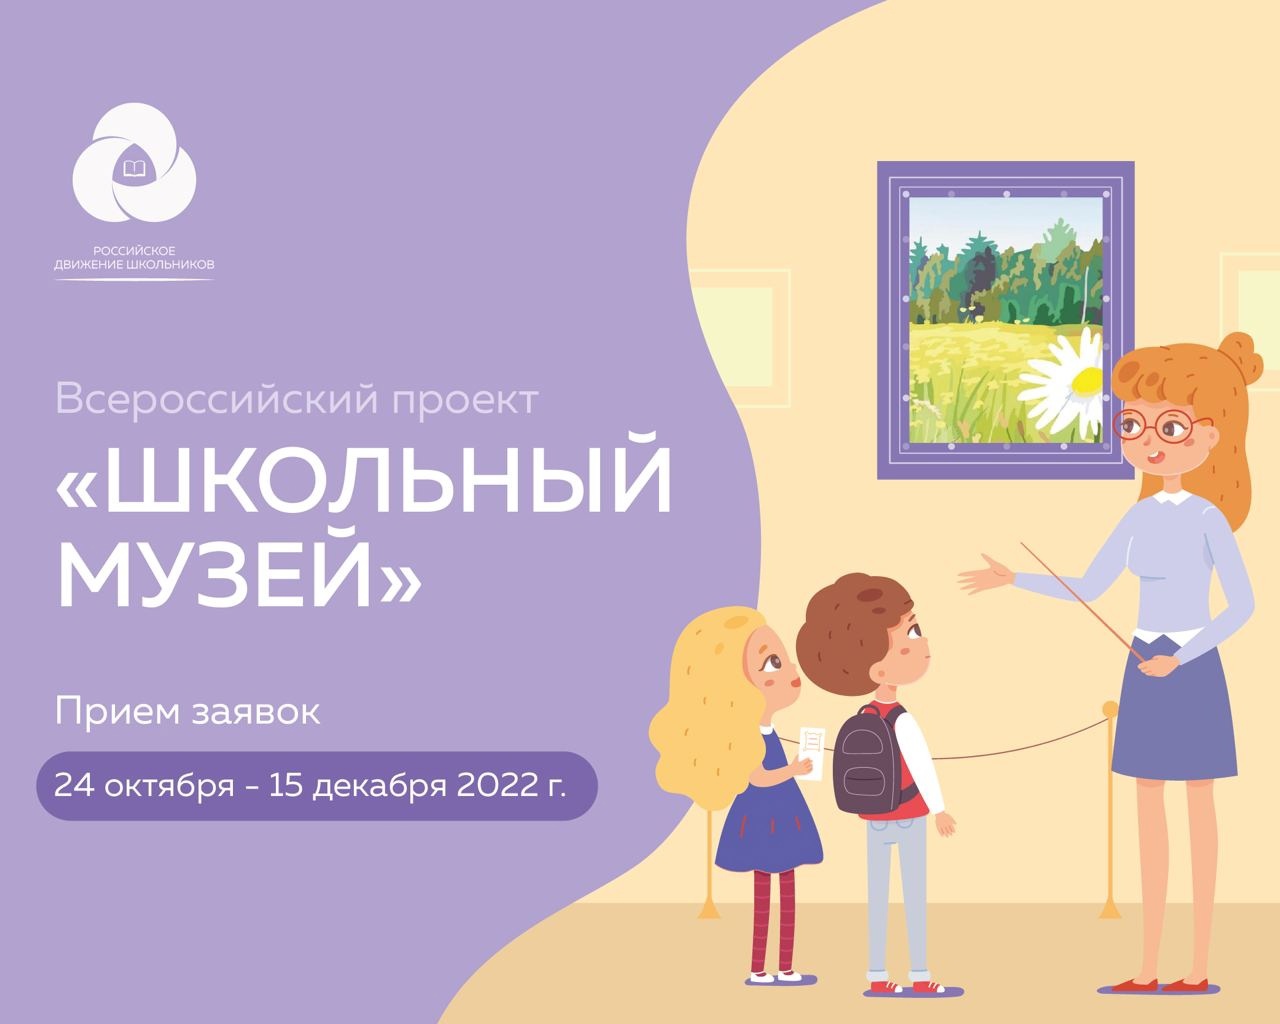 Начался приём заявок на Всероссийский проект «Школьный музей»